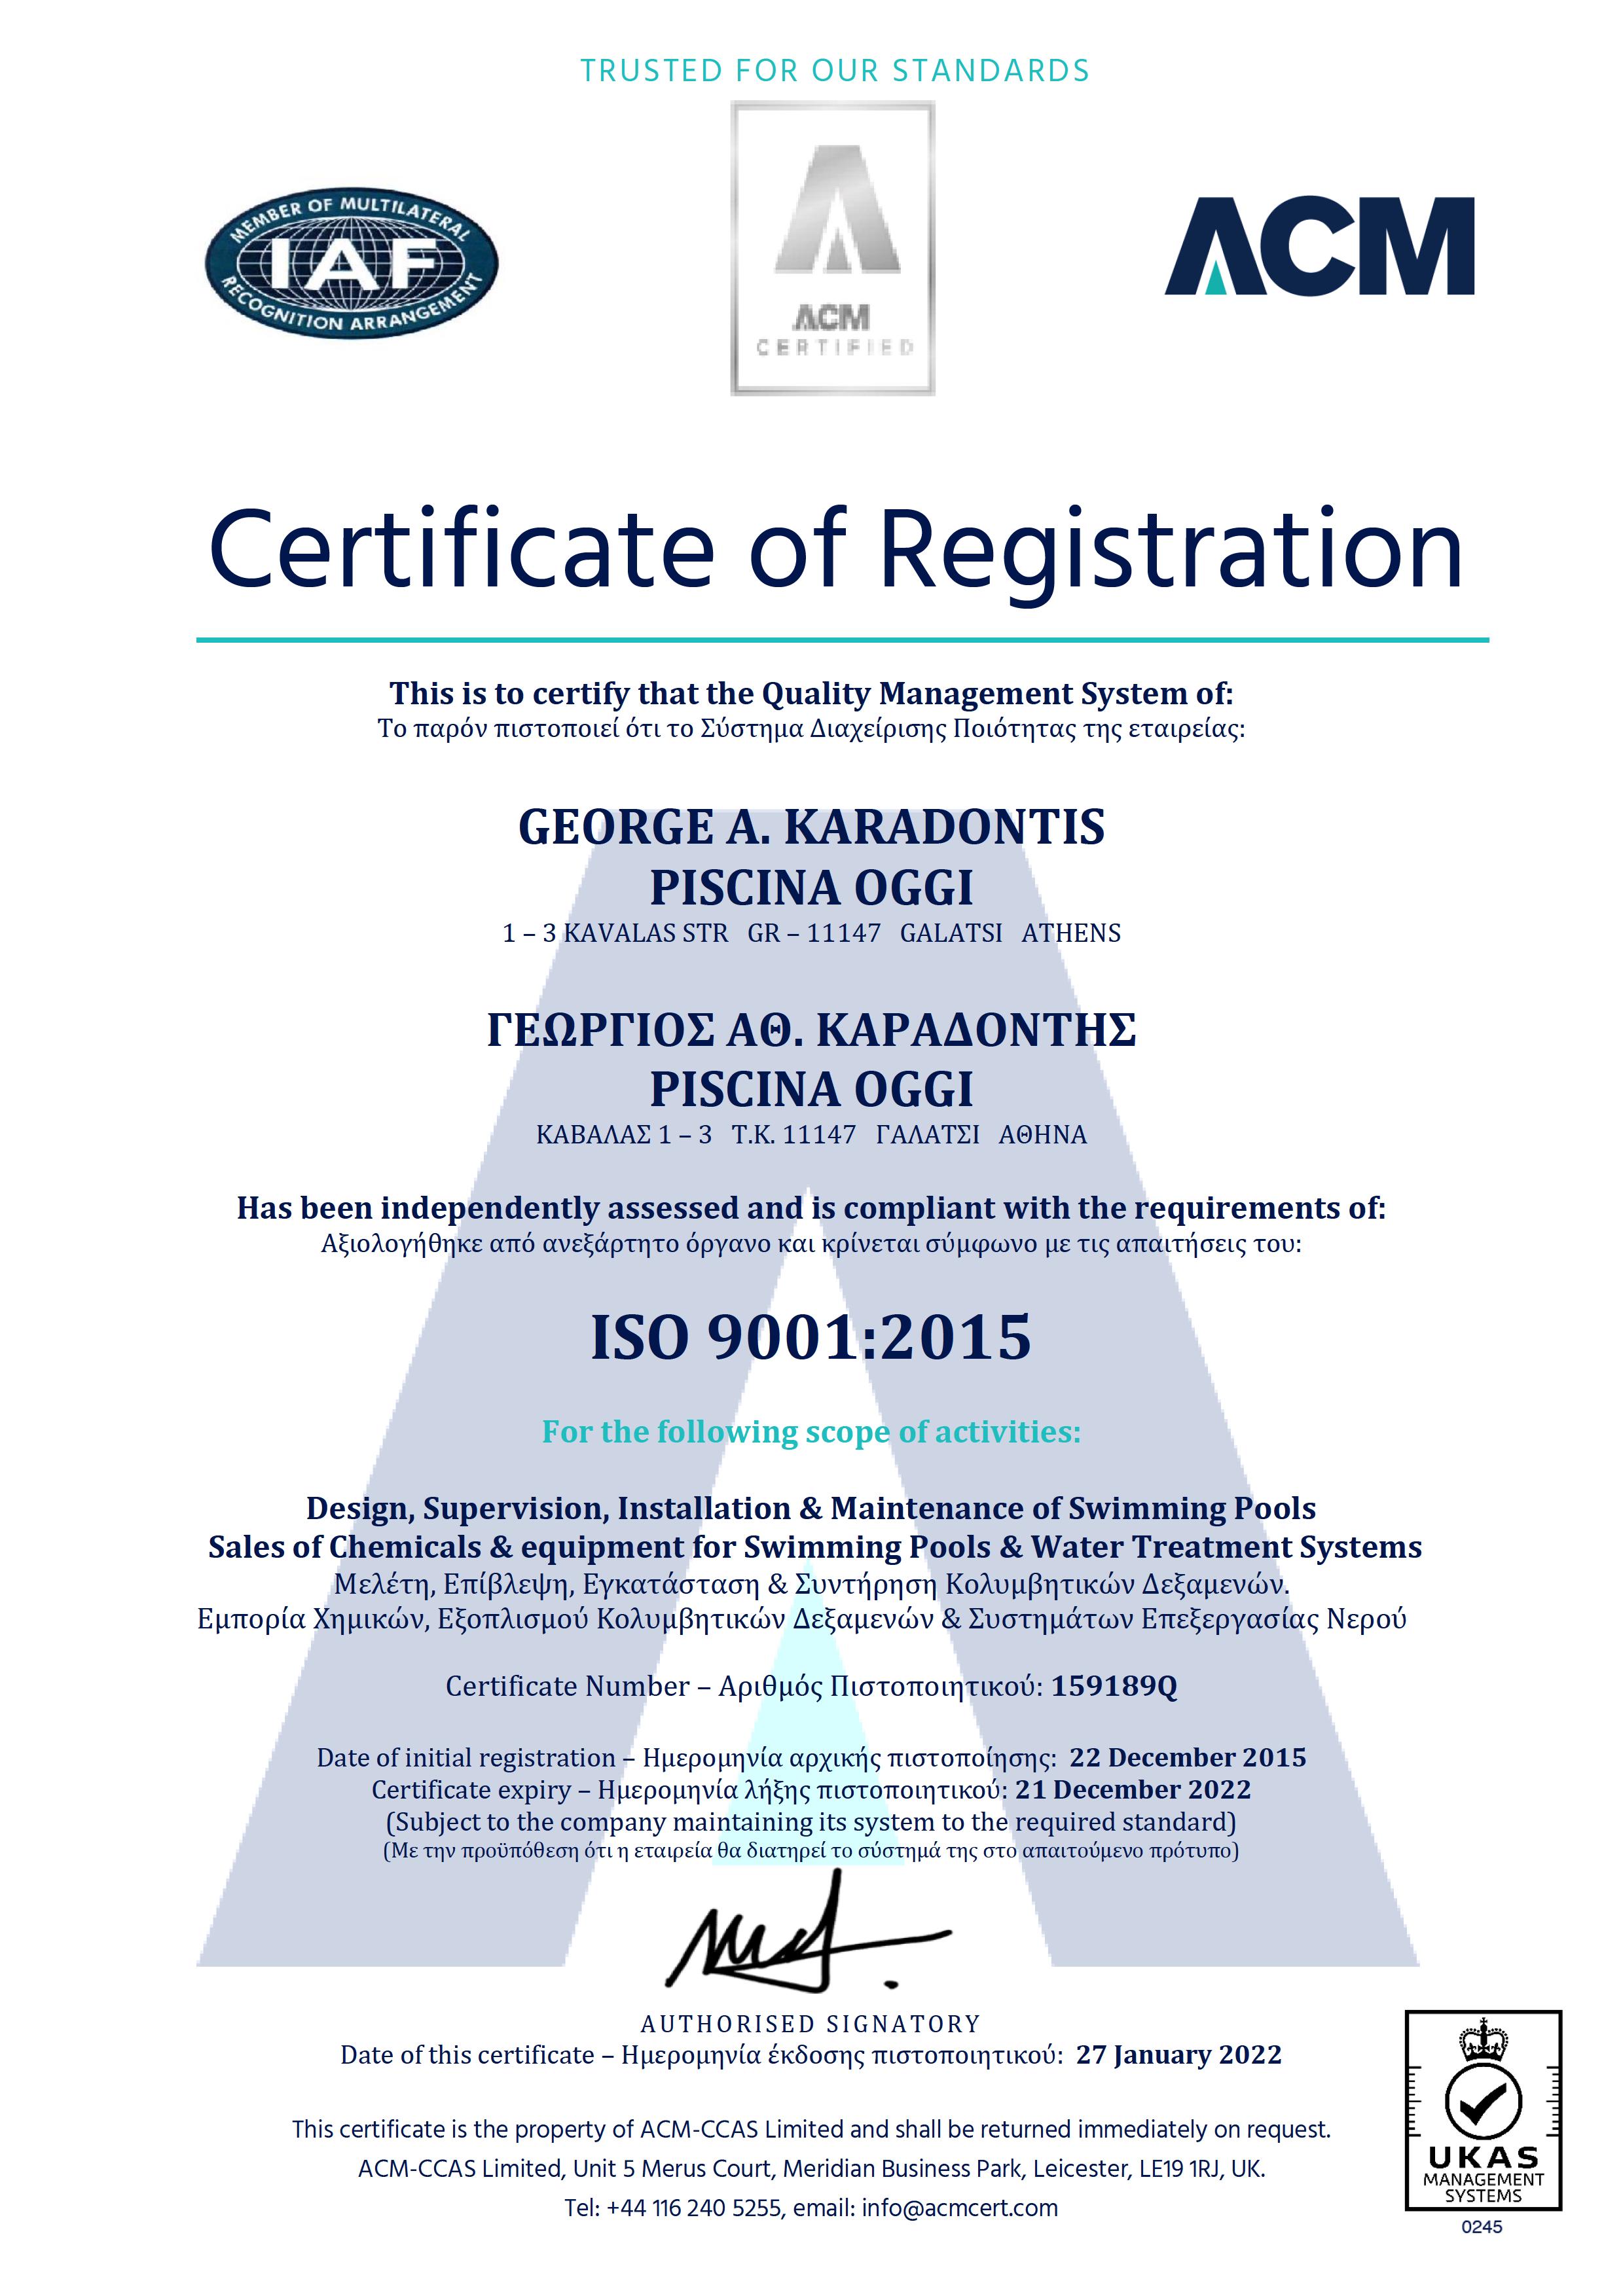 Πιστοποιητικό ISO 9001:2015